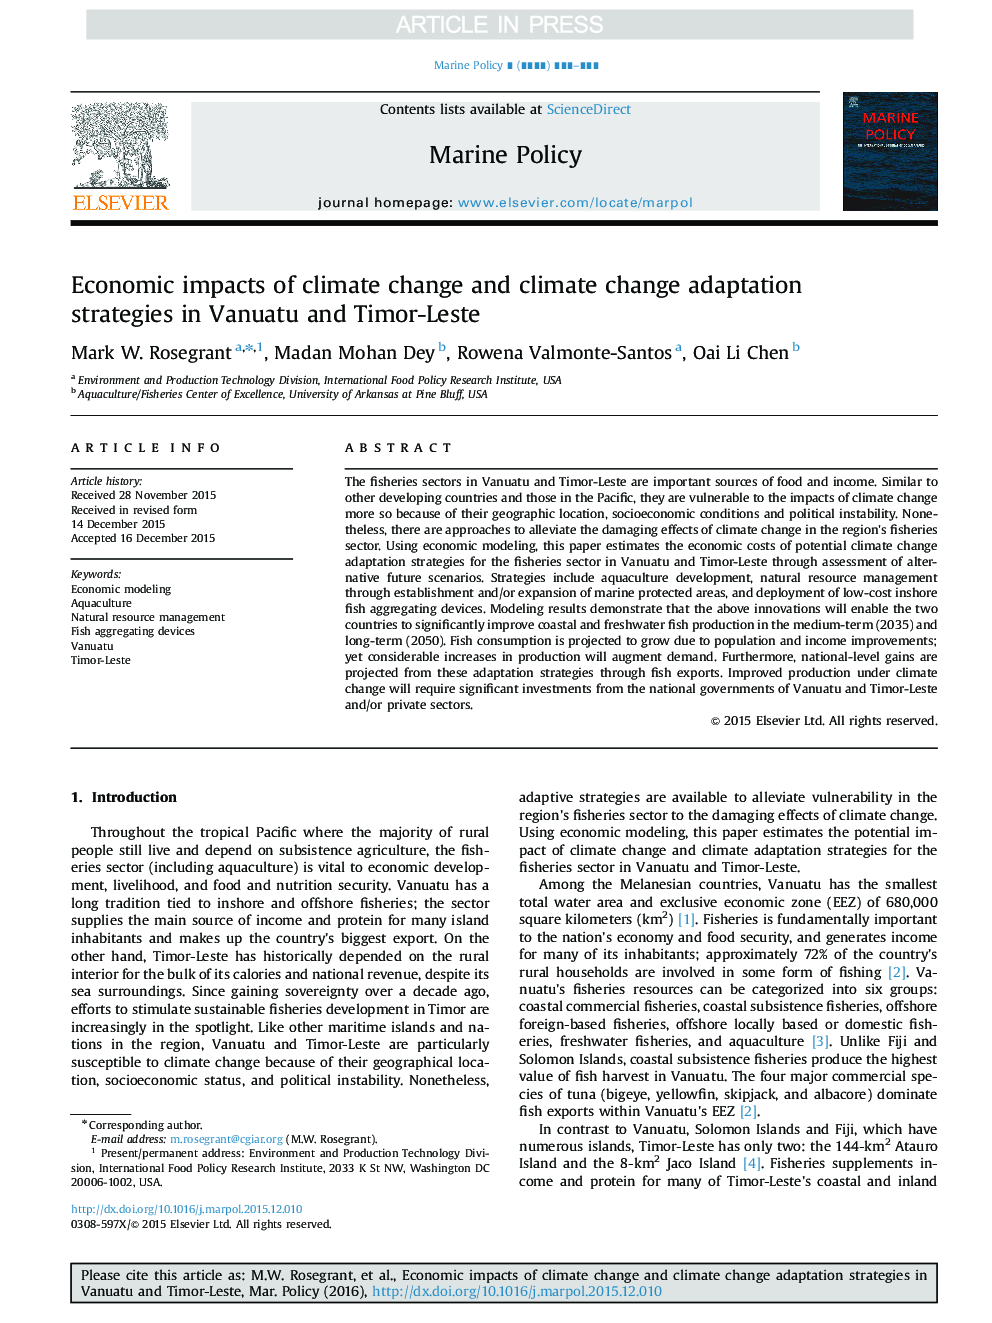 تاثیرات اقتصادی تغییرات اقلیمی و استراتژی های انطباق تغییرات اقلیمی در وانواتو و تیمور-لست 